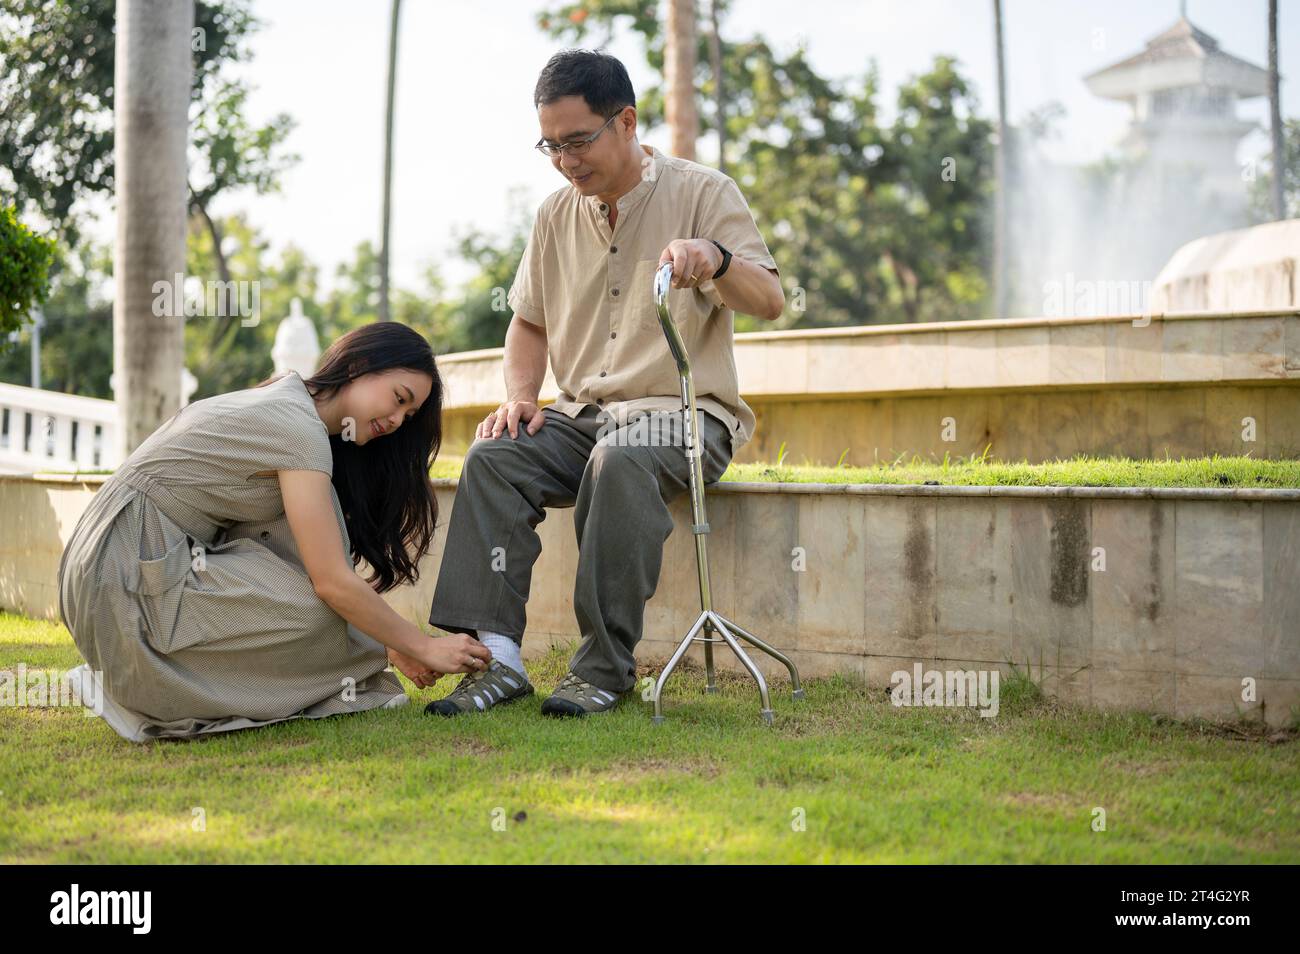 Une jeune fille asiatique adorable et attentionnée aide son père aîné à mettre des chaussures, nouer des lacets tout en se relaxant dans un parc verdoyant à l'extérieur. Banque D'Images